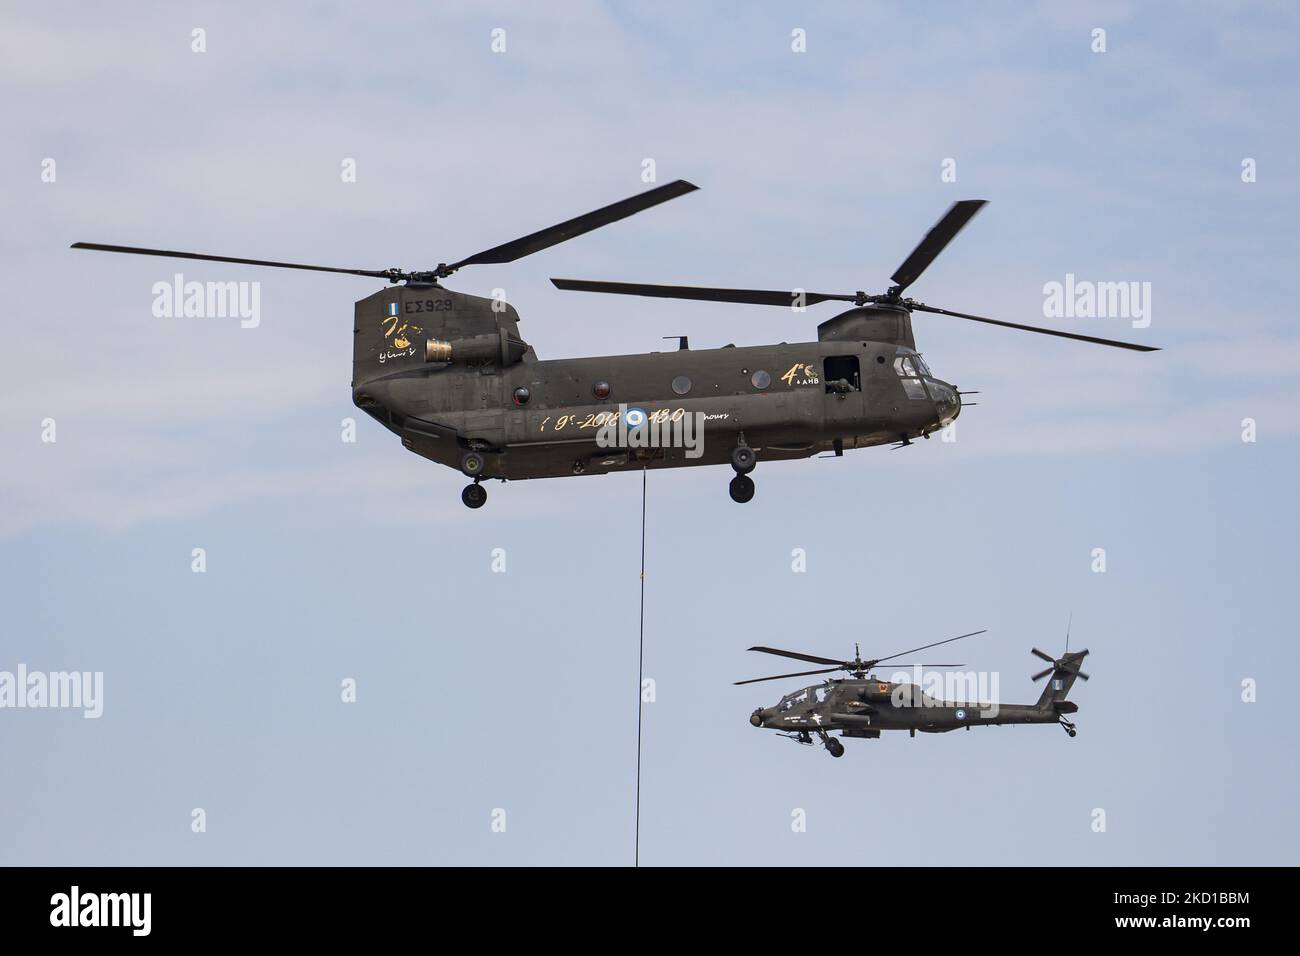 Un hélicoptère Apache Boeing AH-64 de l'armée grecque avec un Boeing CH-47 Chinook tel qu'il a été vu voler et manœuvrer lors d'une démonstration de vol lors du salon aérien de la semaine de vol 2021 d'Athènes à l'aéroport de la base aérienne de Tanagra. L'Apache de l'armée hellénique est la version AH-64D Apache Longbow. L'avion spécifique est un double hélicoptère de combat d'attaque de turbomoteur sous le fuselage et sur les ailes avec une mitrailleuse, des missiles, une fusée et des capacités d'autodéfense. La Grèce, un pays avec une force aérienne forte, est un État membre de l'OTAN de l'Organisation du Traité de l'Atlantique Nord. Tanagra, Grèce, le septembre Banque D'Images